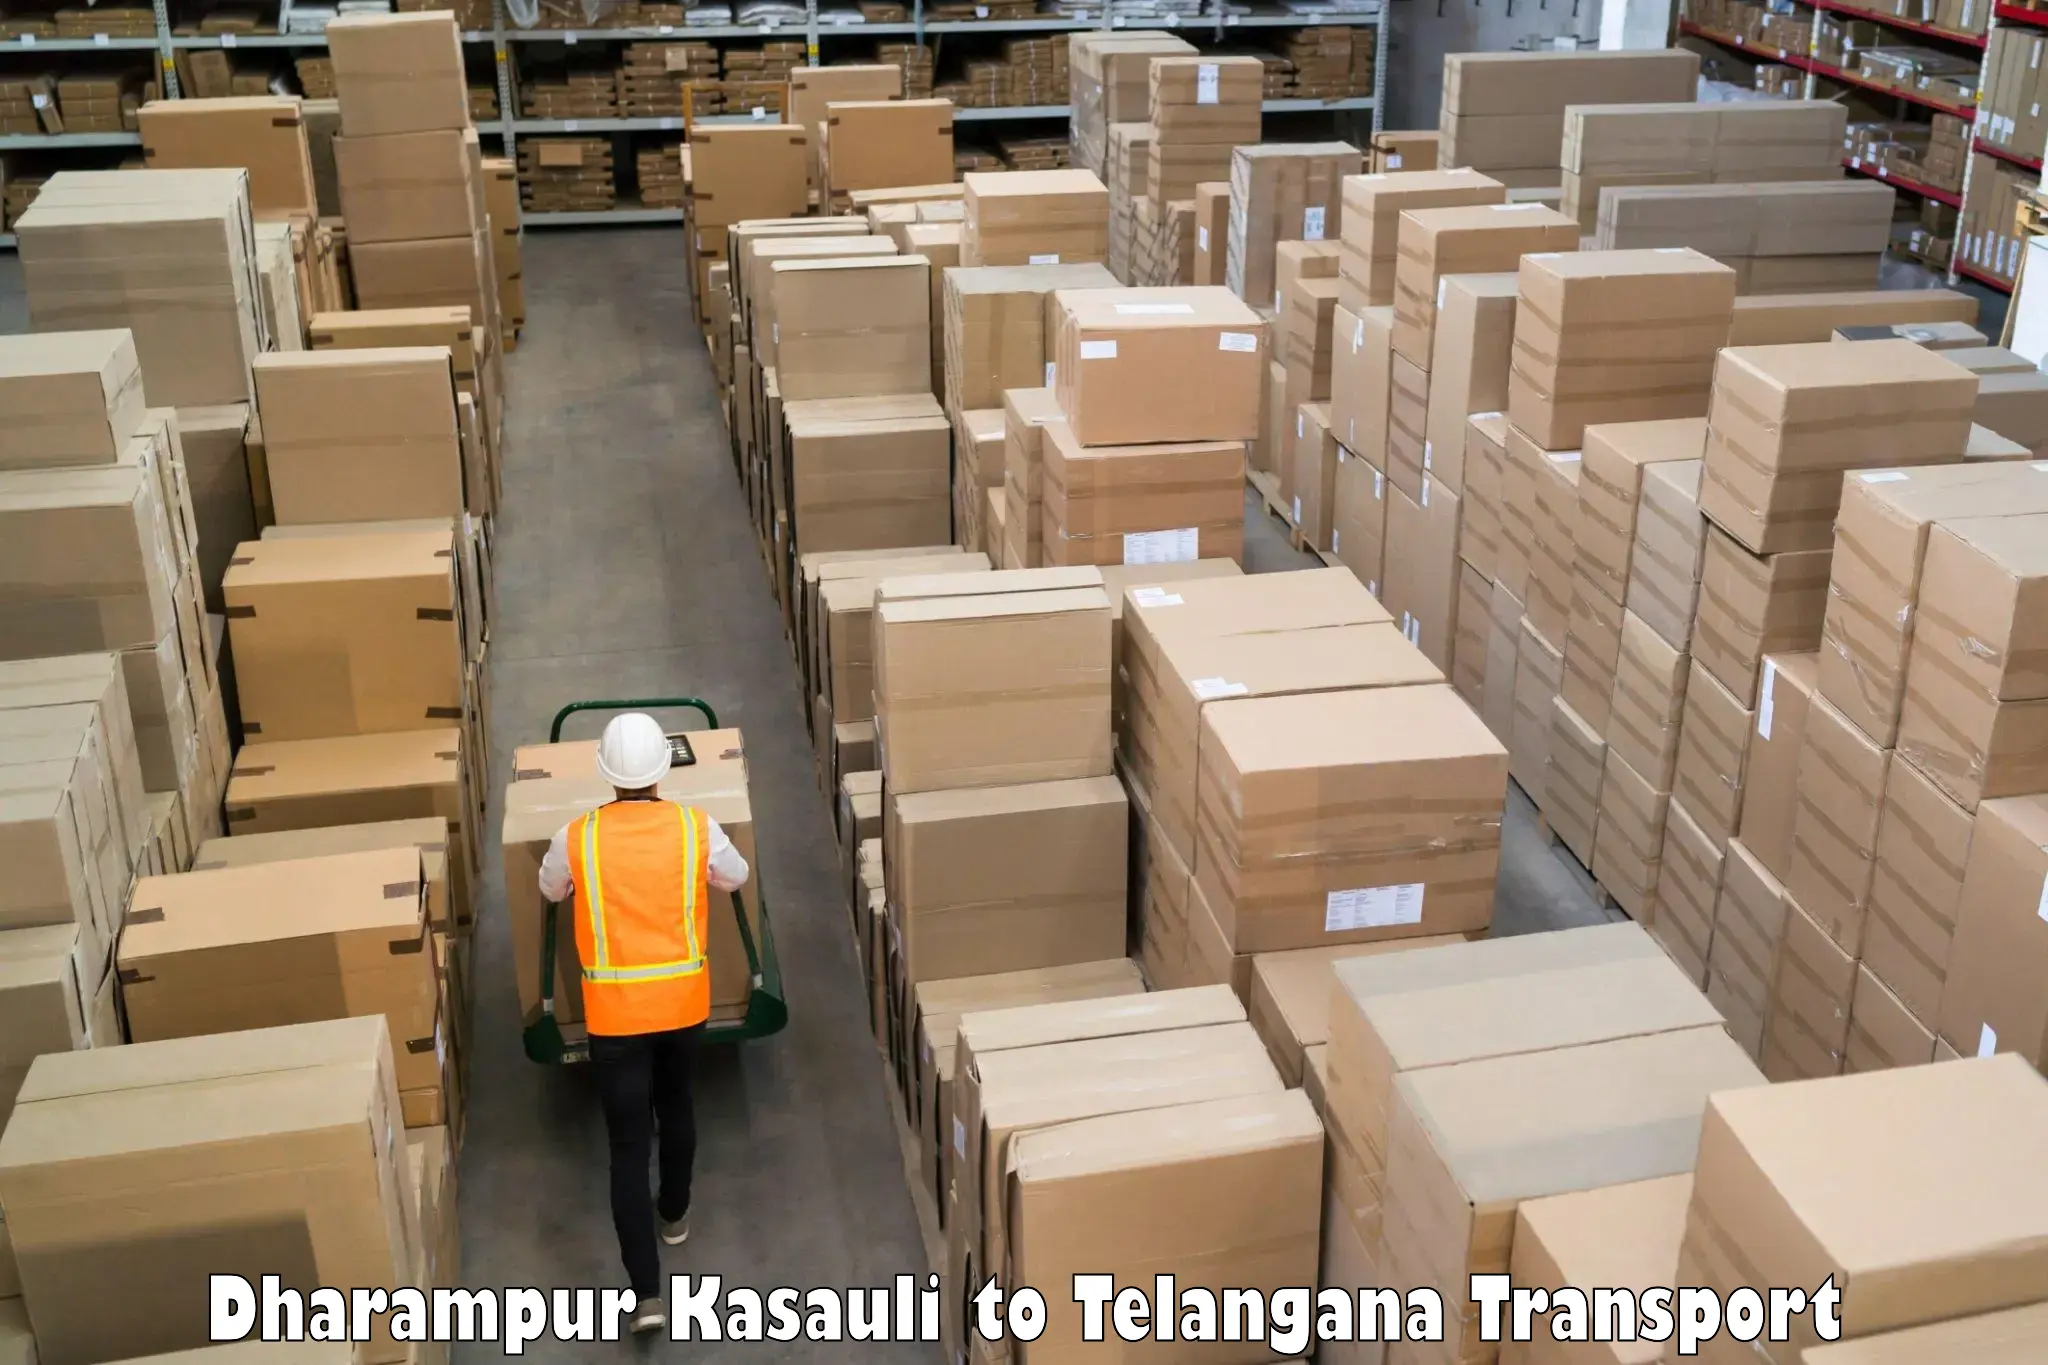 Air freight transport services Dharampur Kasauli to Warangal